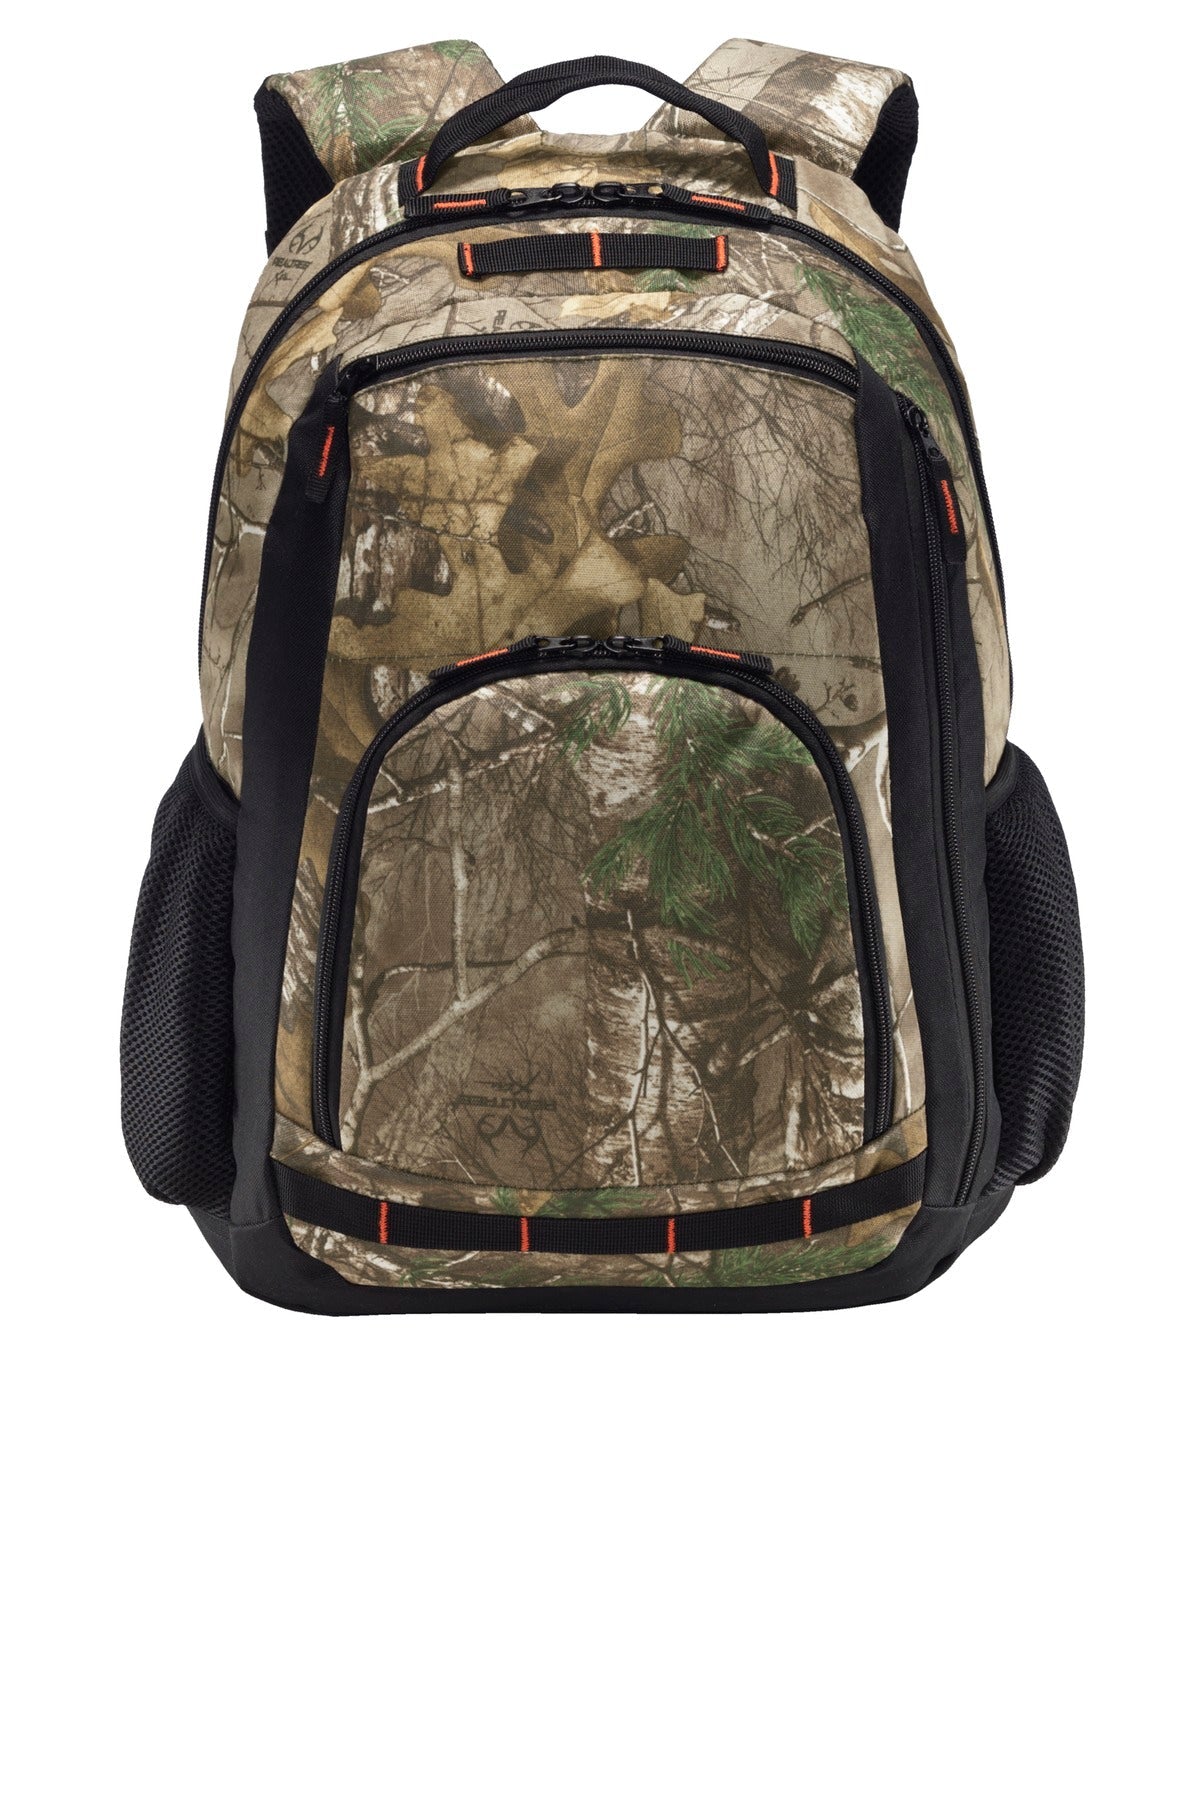 Port Authority® Camo Xtreme Backpack. BG207C - DFW Impression